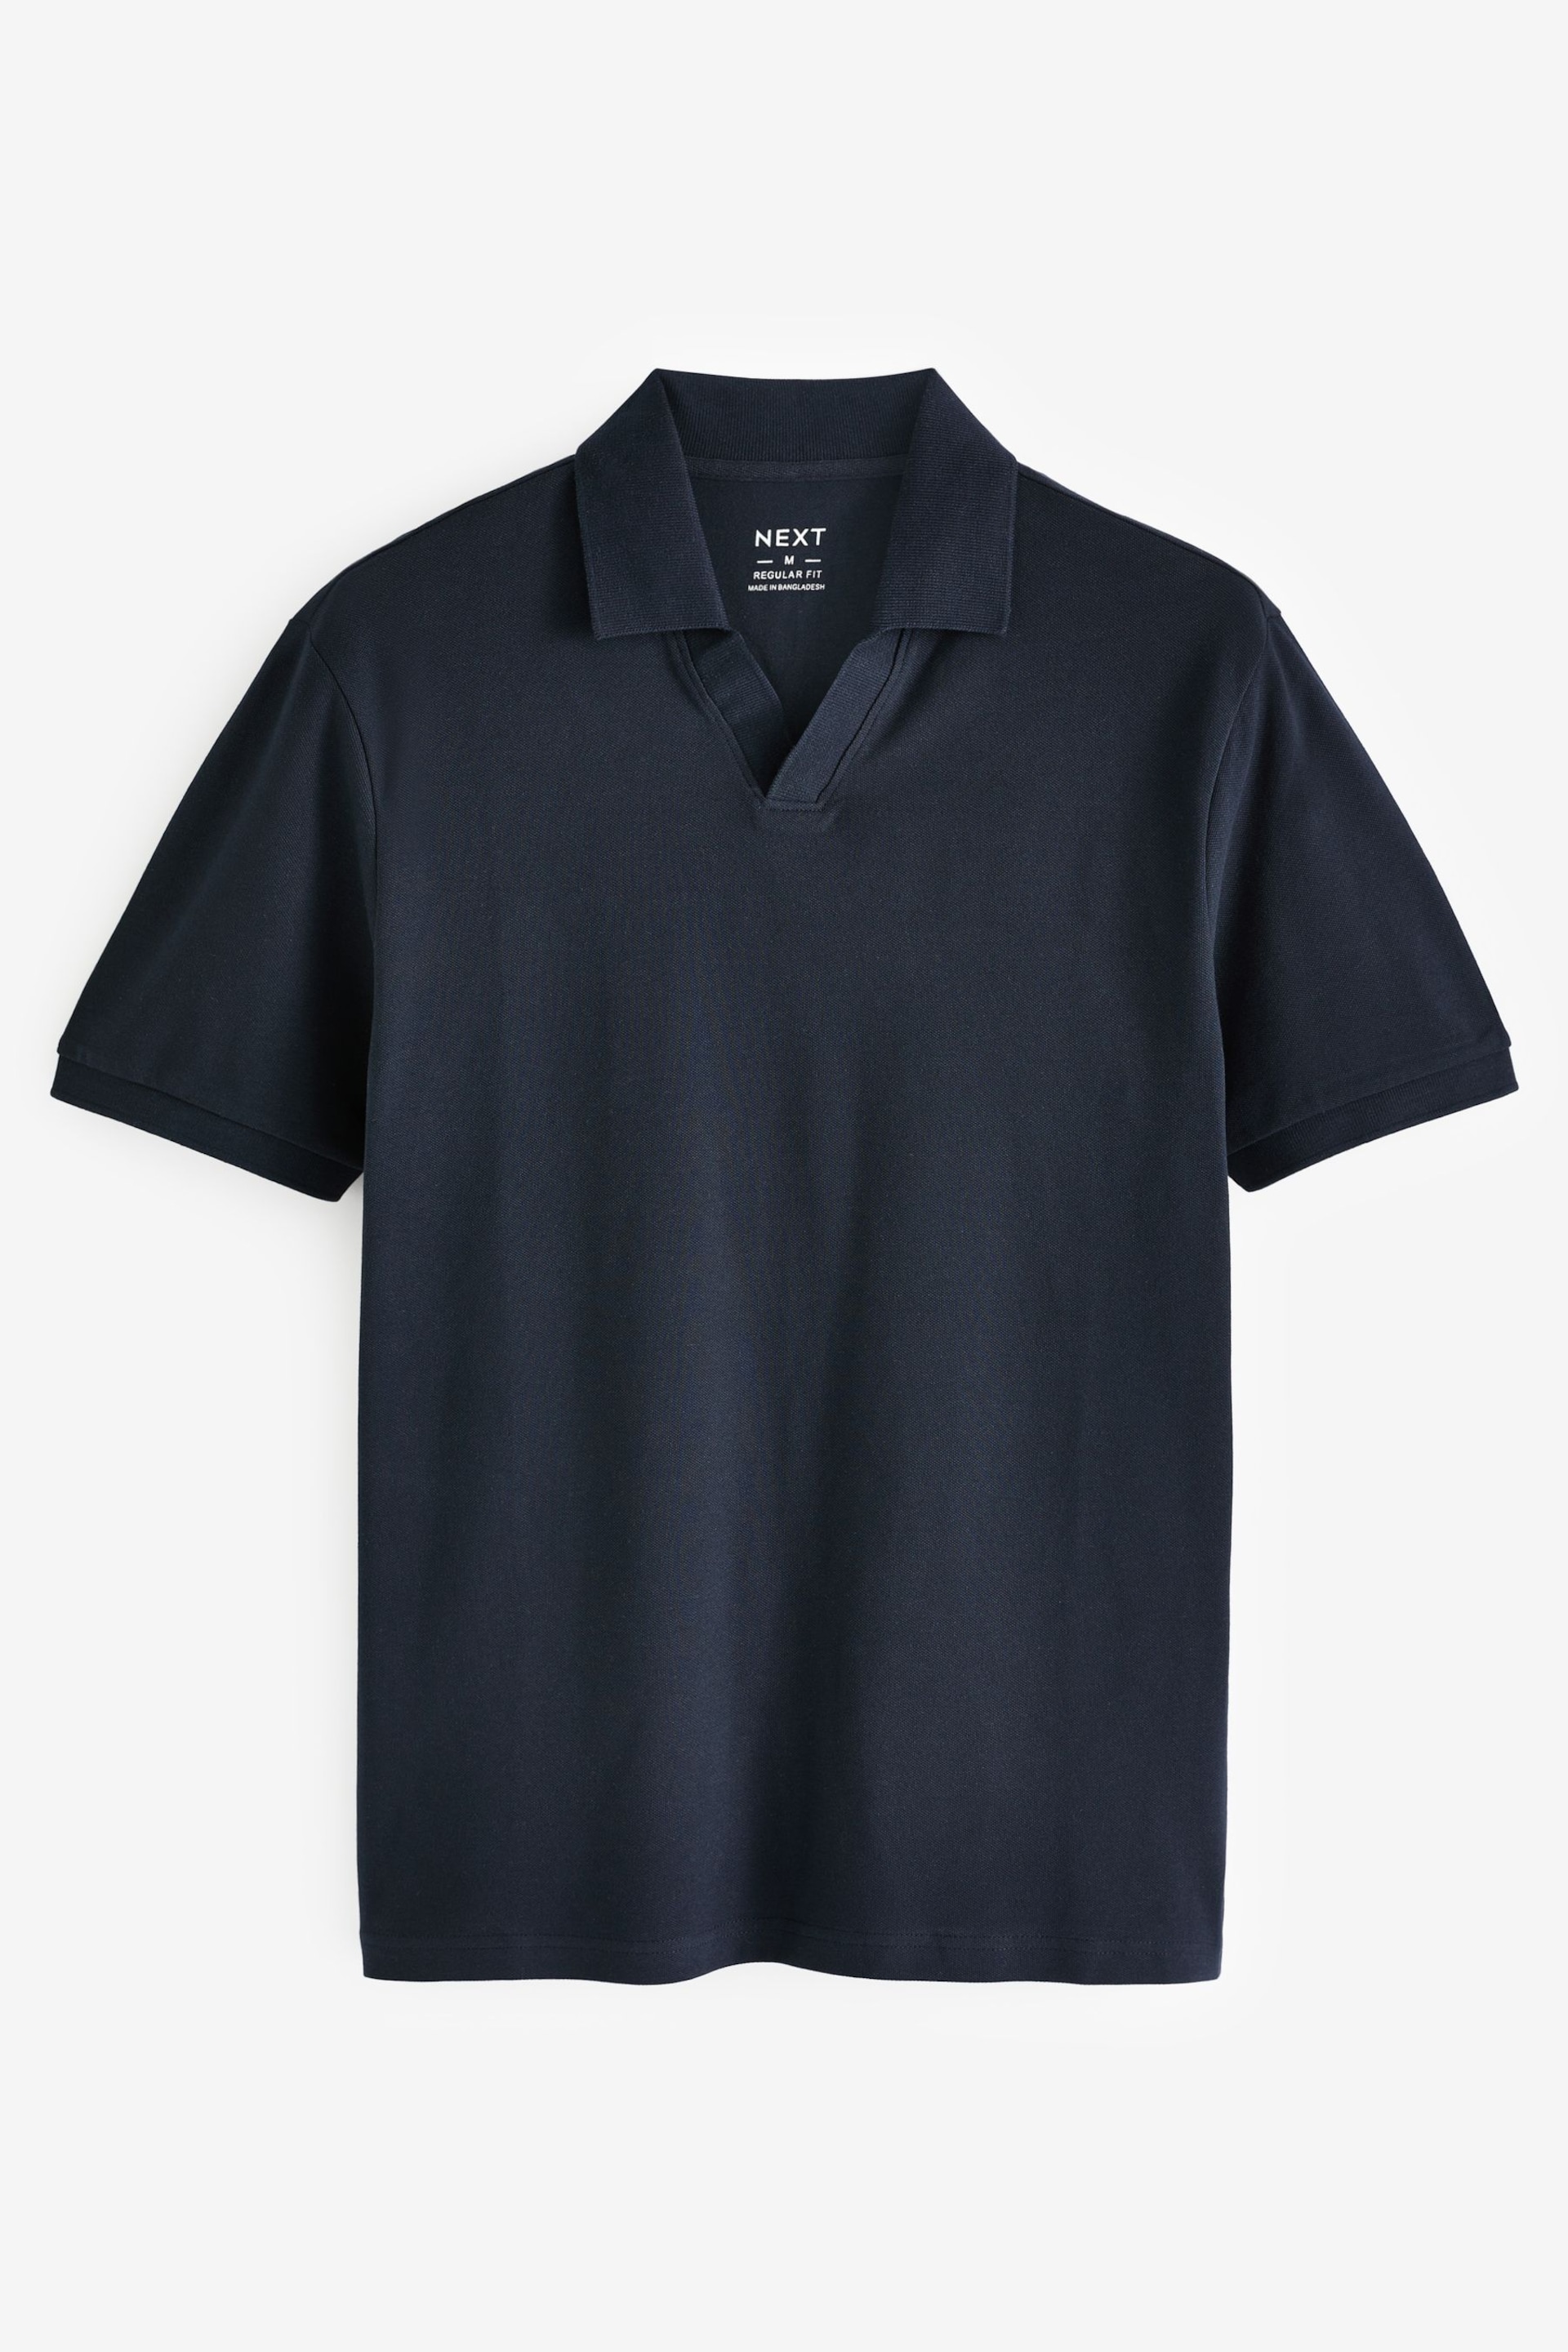 Navy Short Sleeve Cuban Collar Pique Polo Shirt - Image 5 of 7